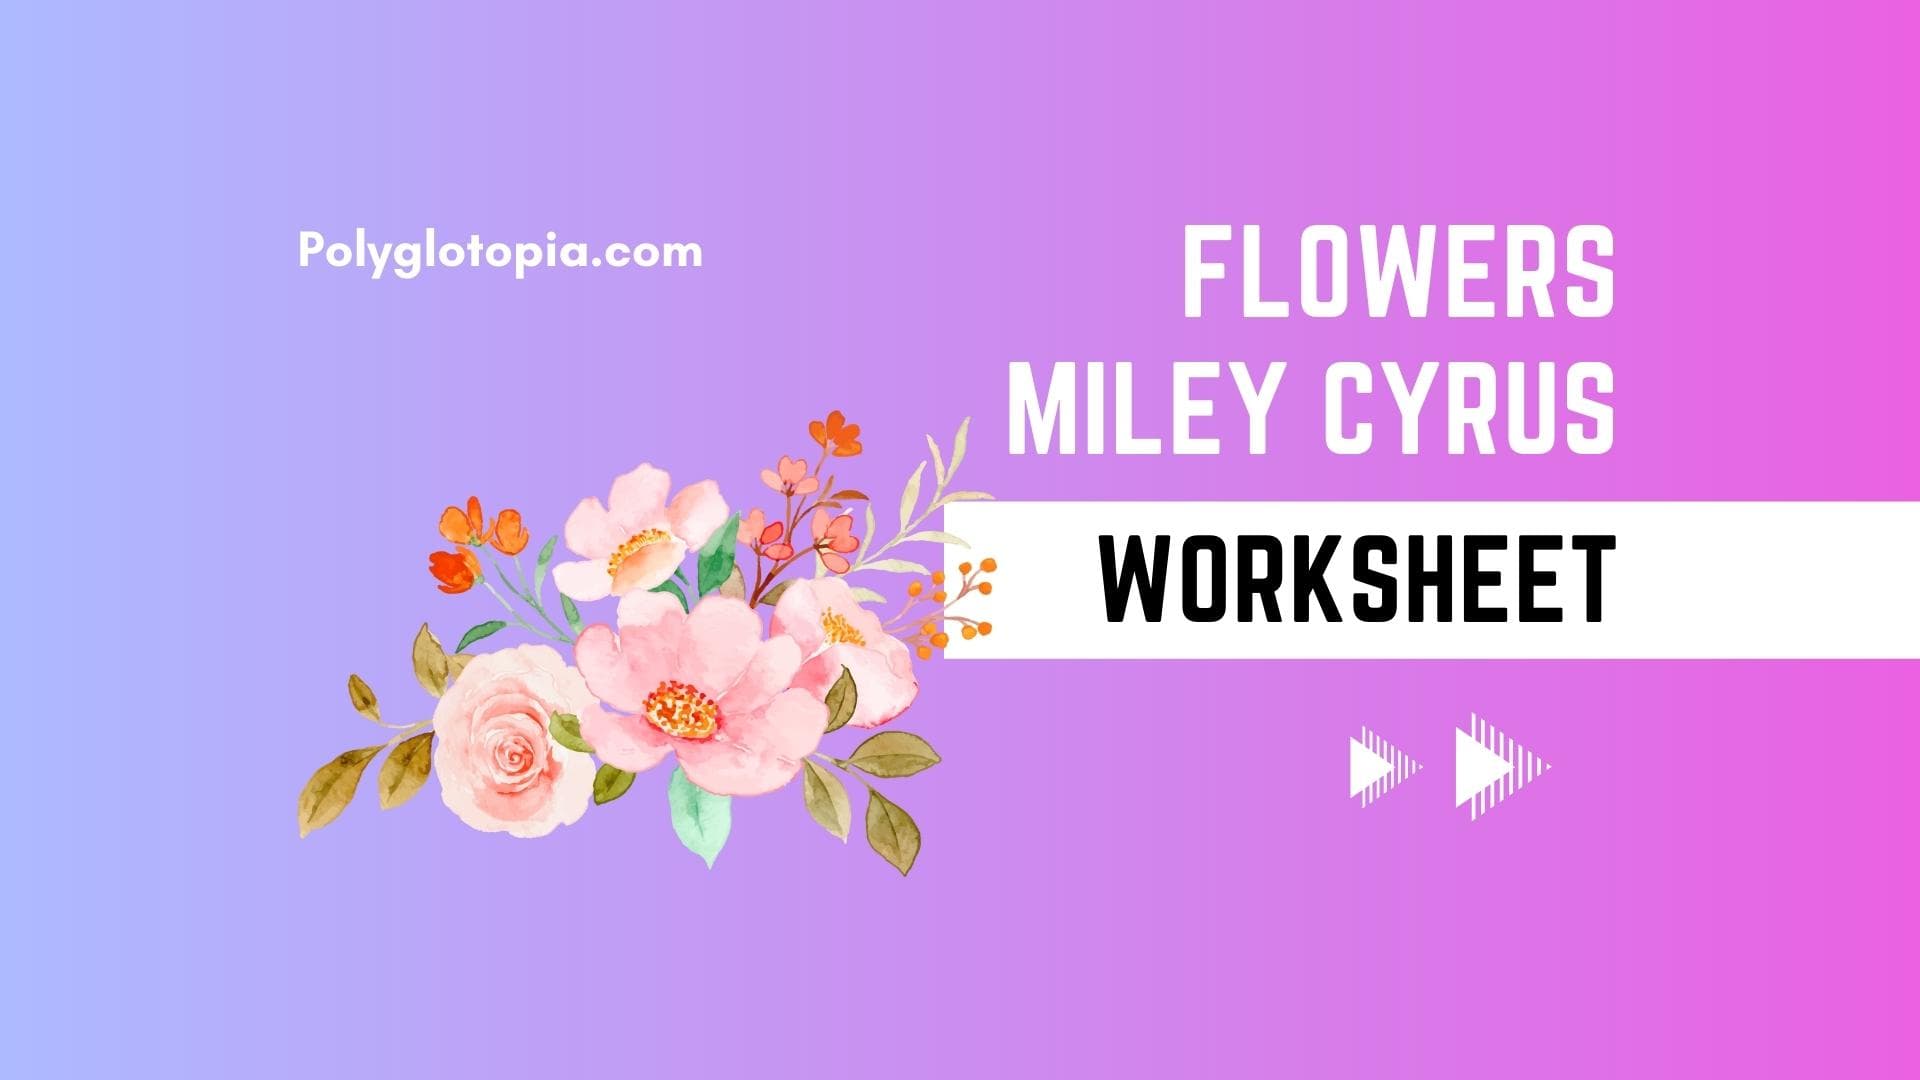 Flowers: veja a letra e tradução da nova faixa de Miley Cyrus